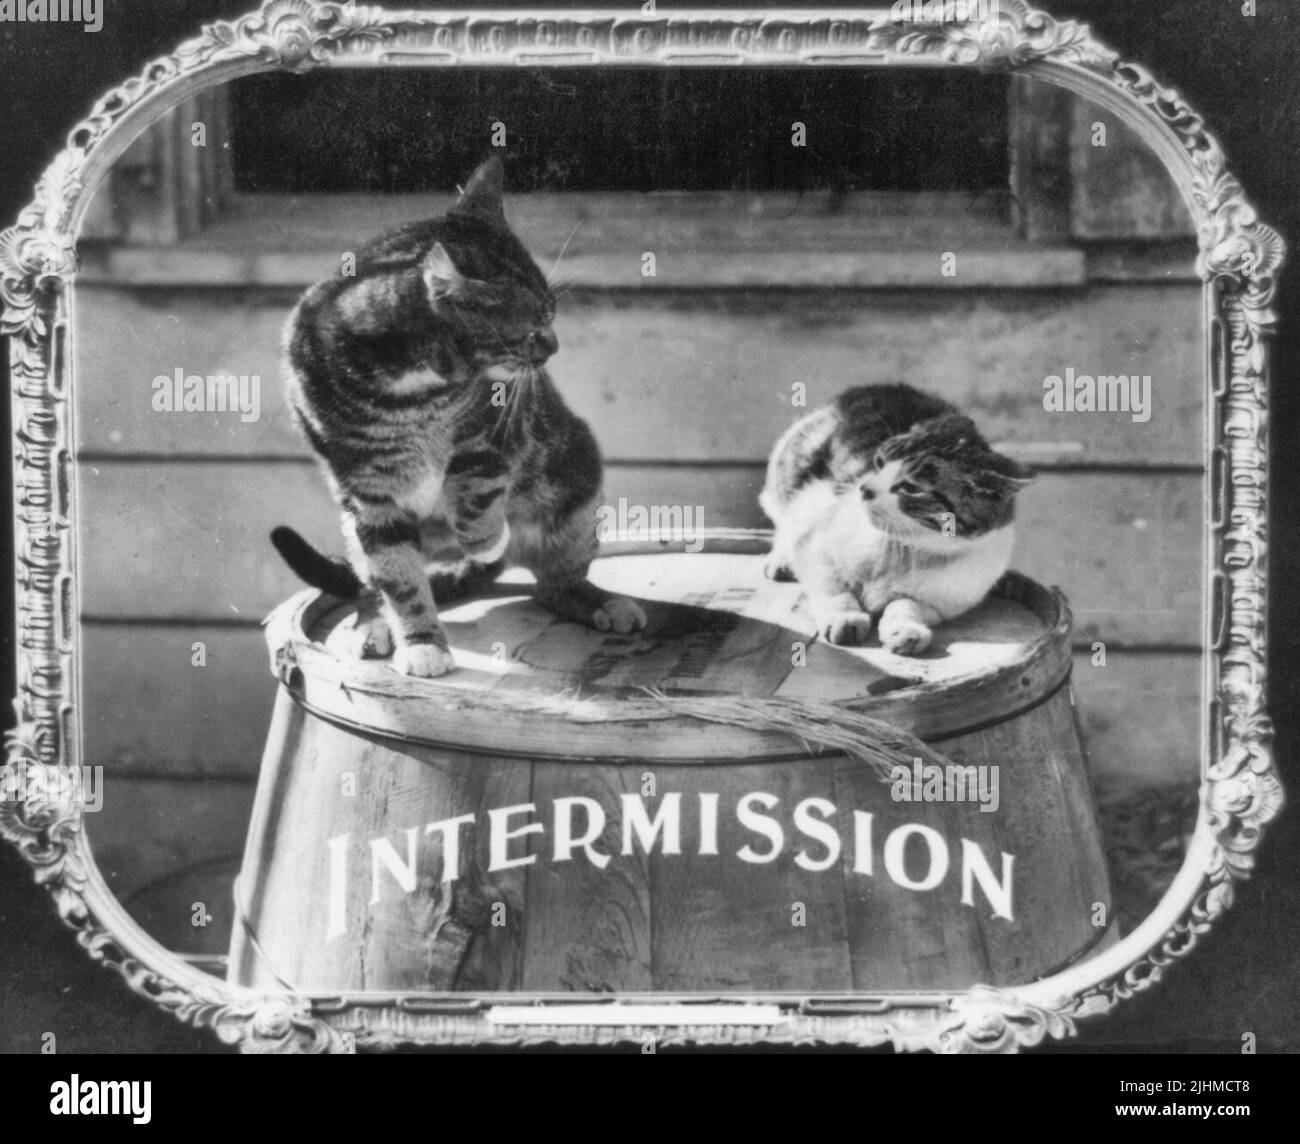 Intermedio - La foto muestra dos gatos en la parte superior de un barril. Impresión en papel positiva de una diapositiva de linterna utilizada en cines cinematográficos como anuncio, alrededor de 1912 Foto de stock